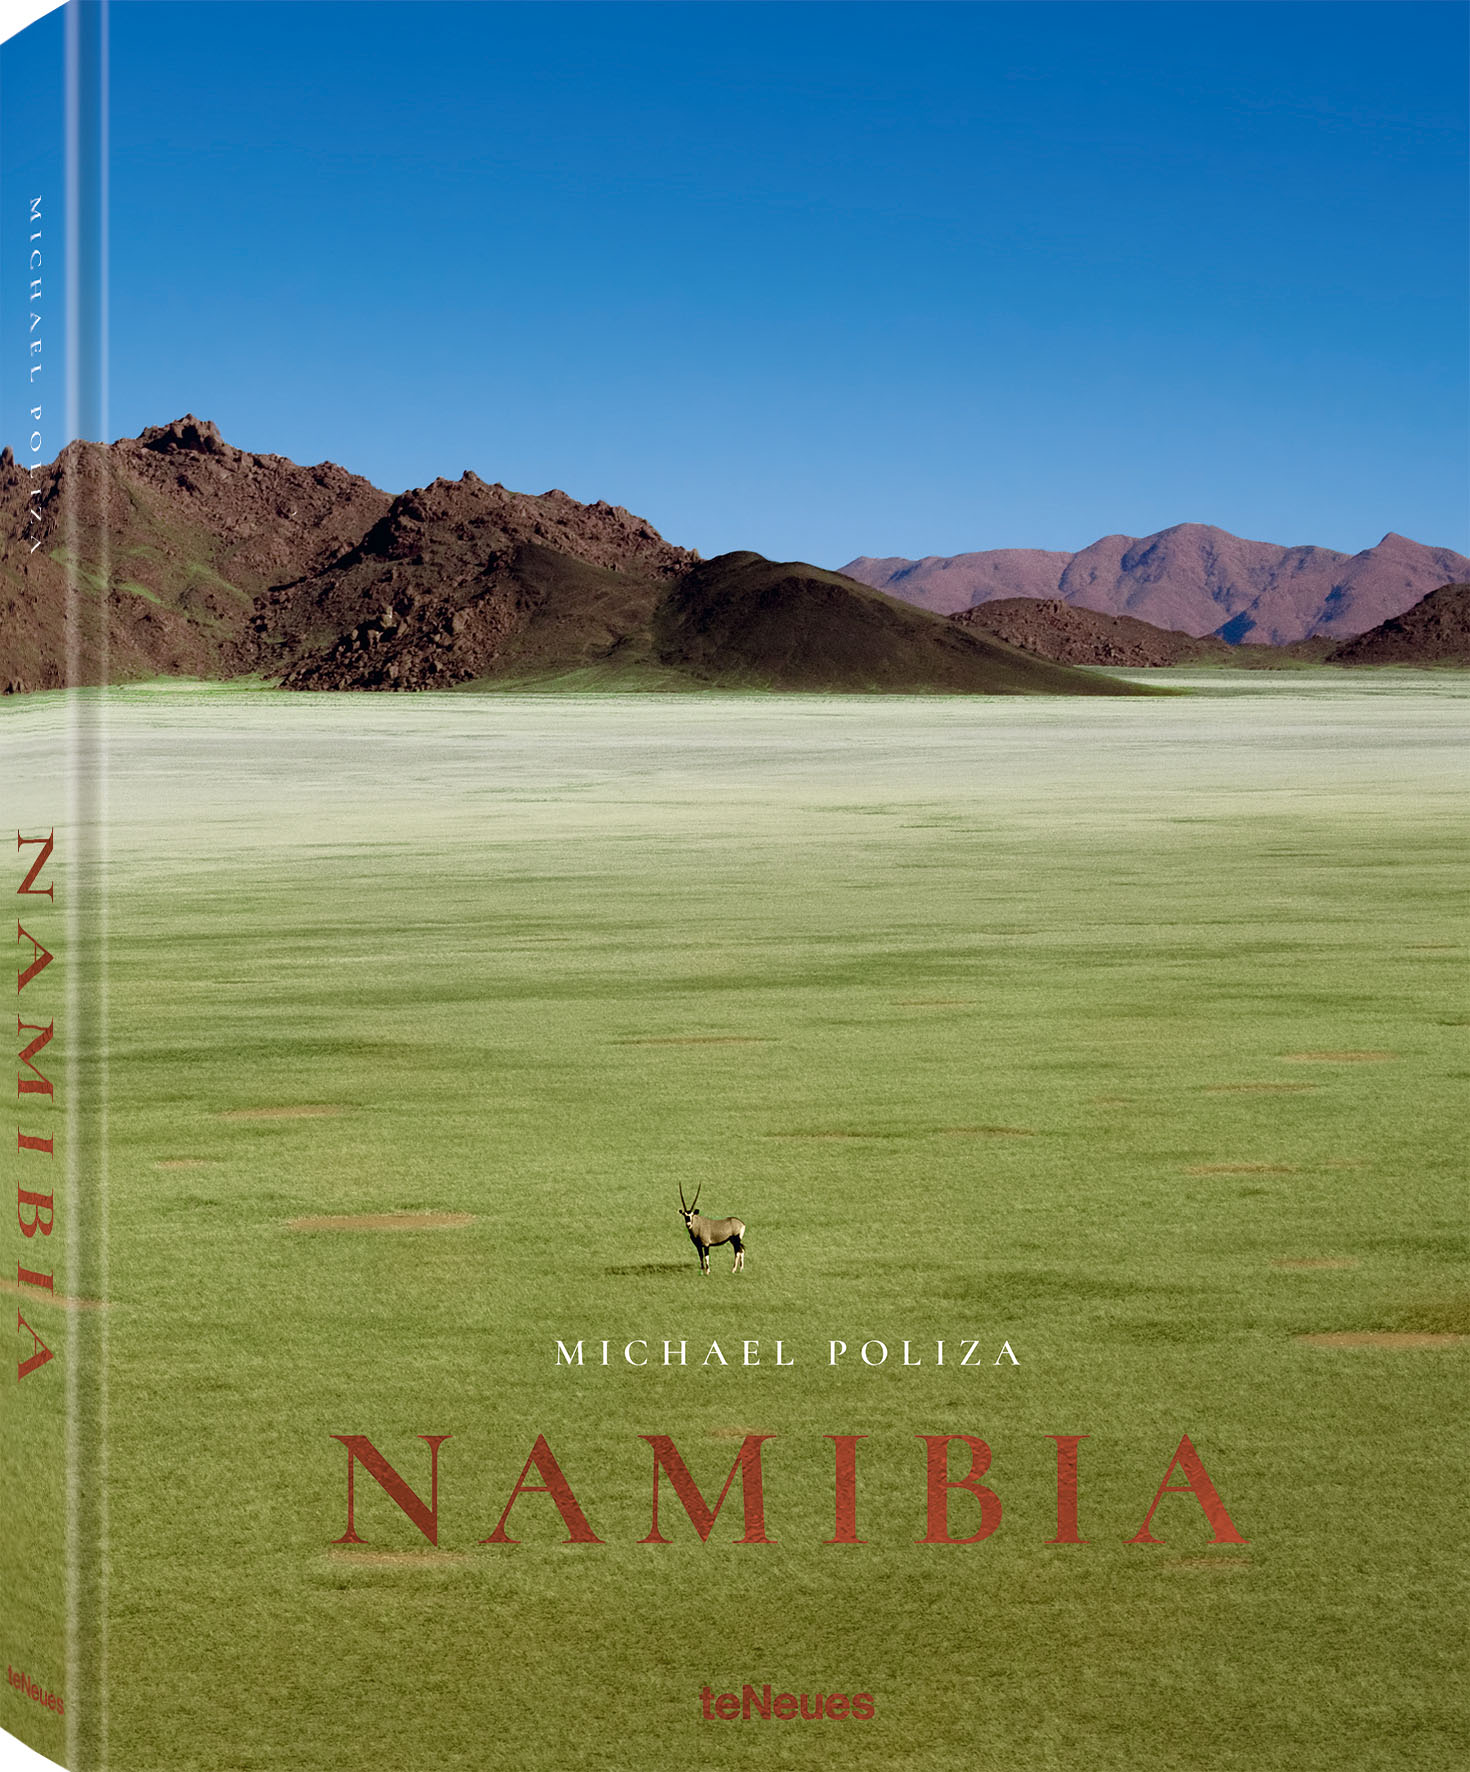 © Namibia von Michael Poliza, erschienen bei teNeues, € 80, www.teneues.com